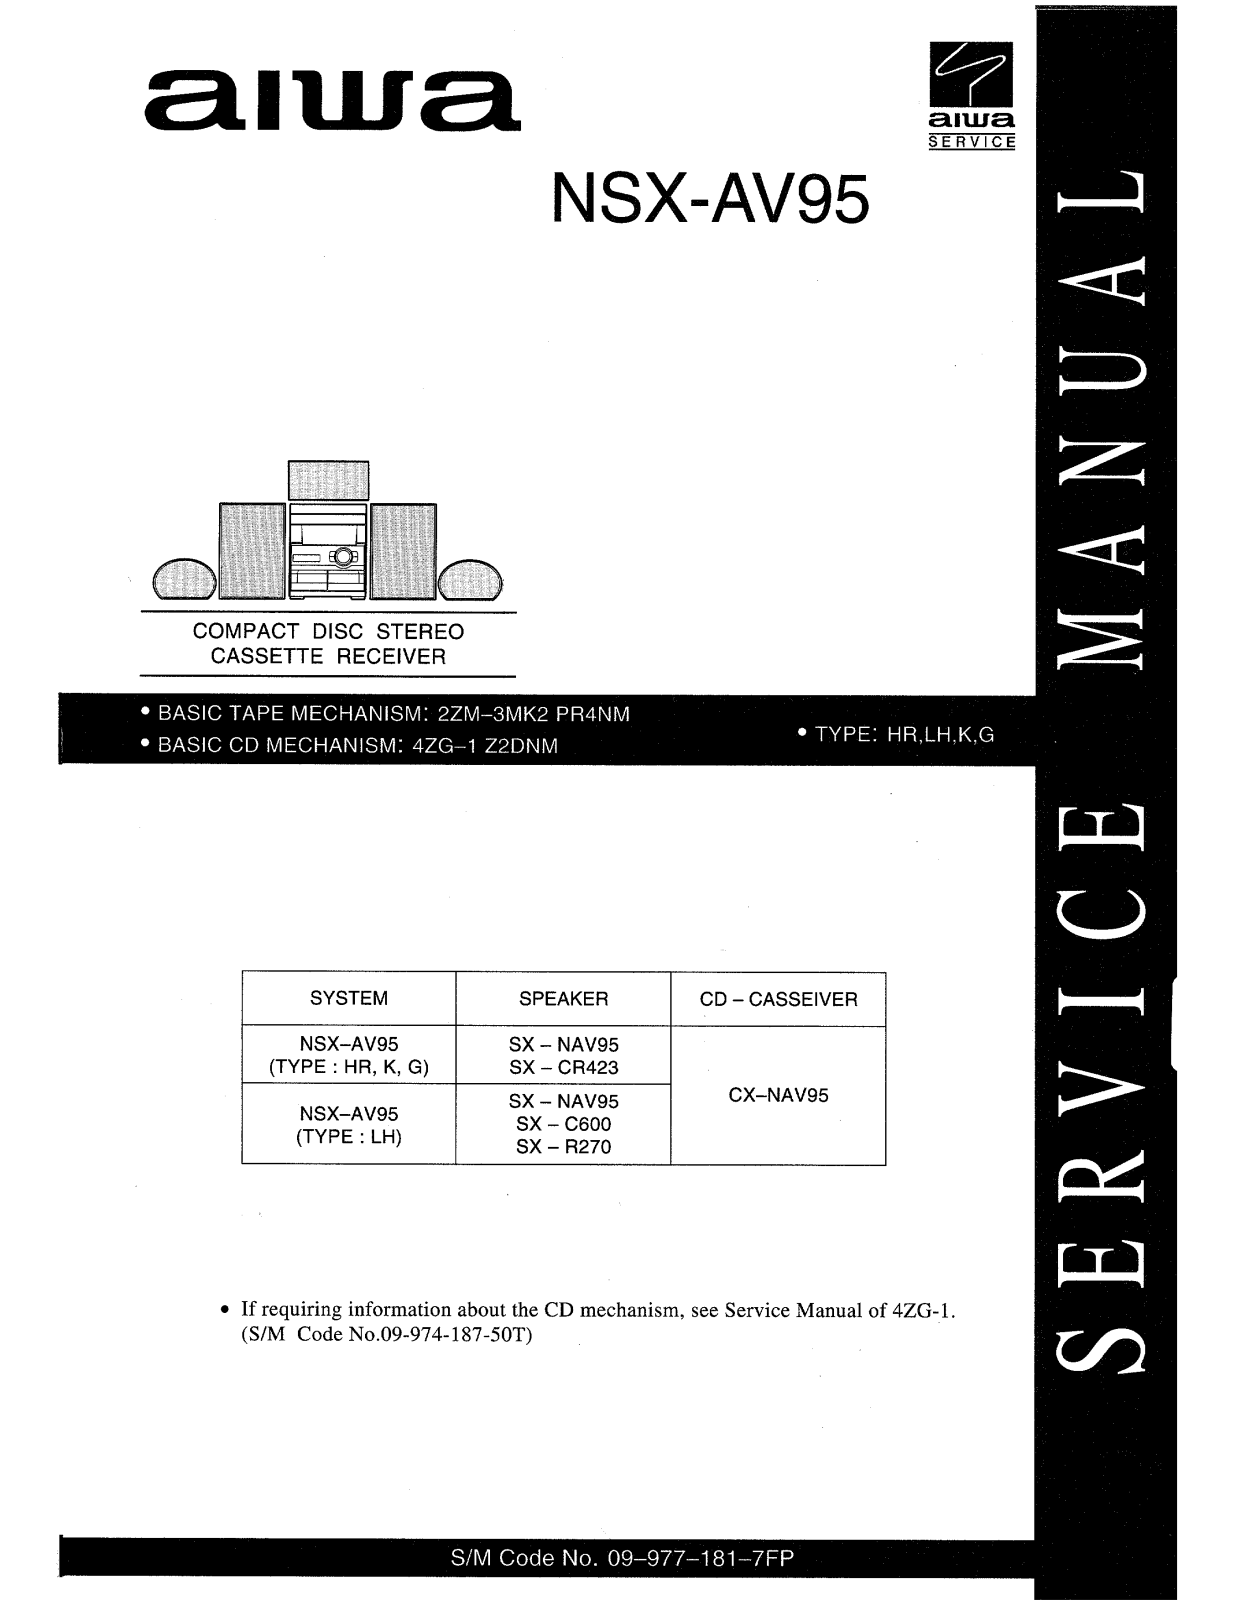 Aiwa nsx av95 Service Manual